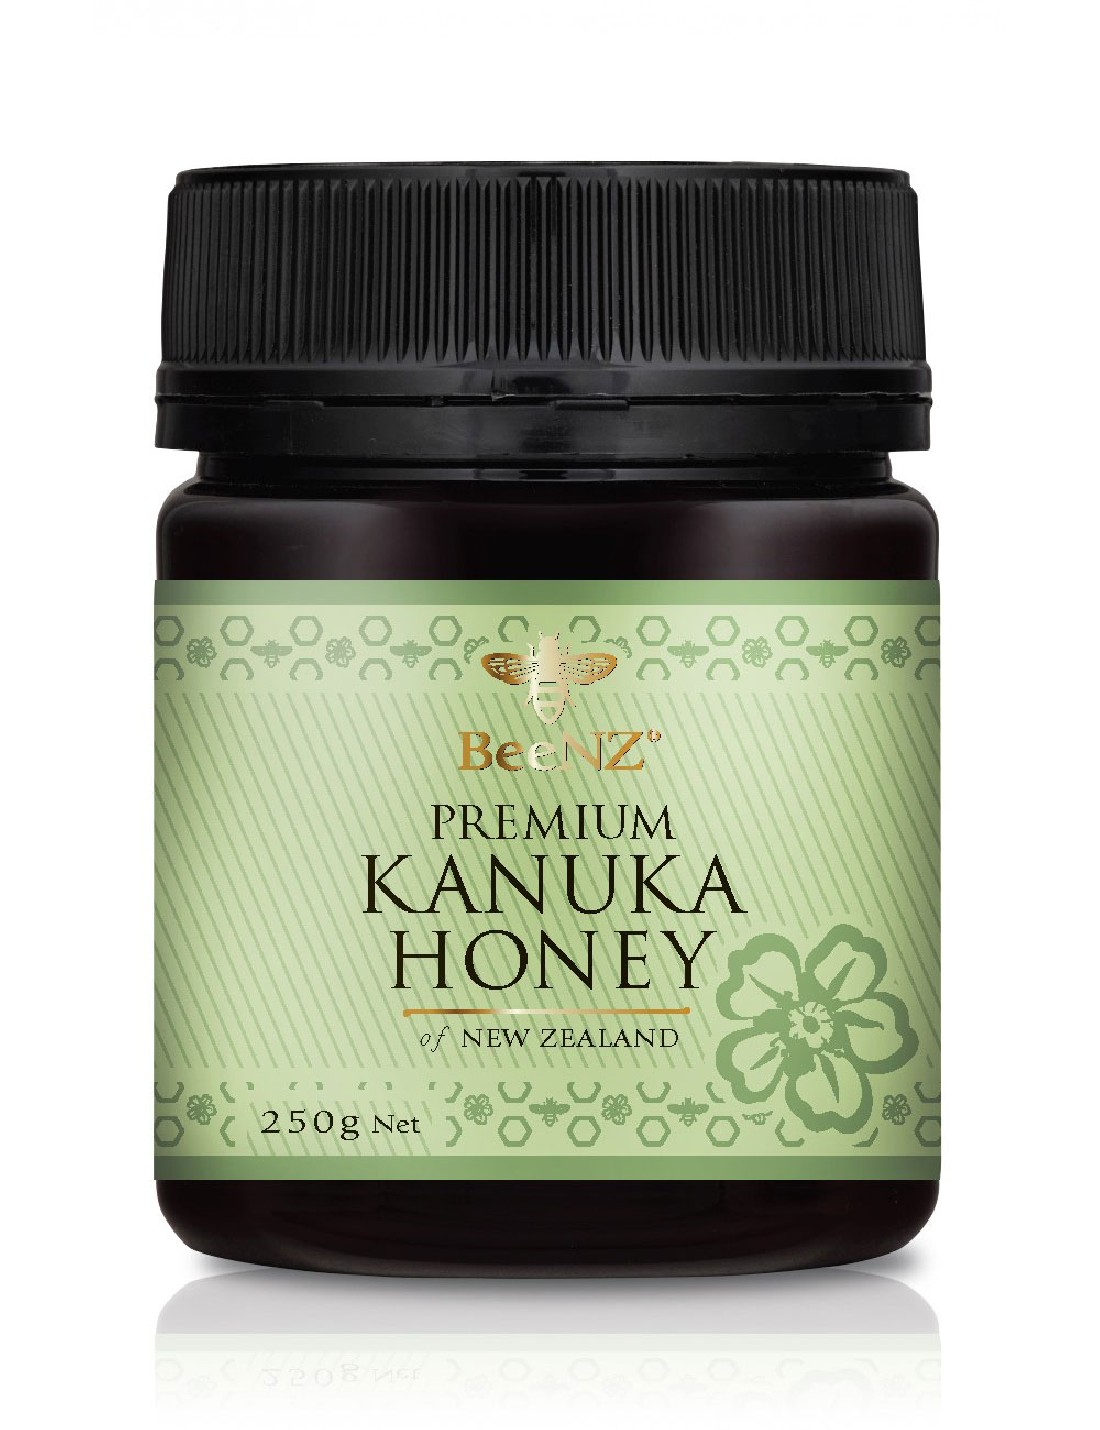 Miele di Kanuka certificato. Miele Antibatterico con proprietà benefiche.